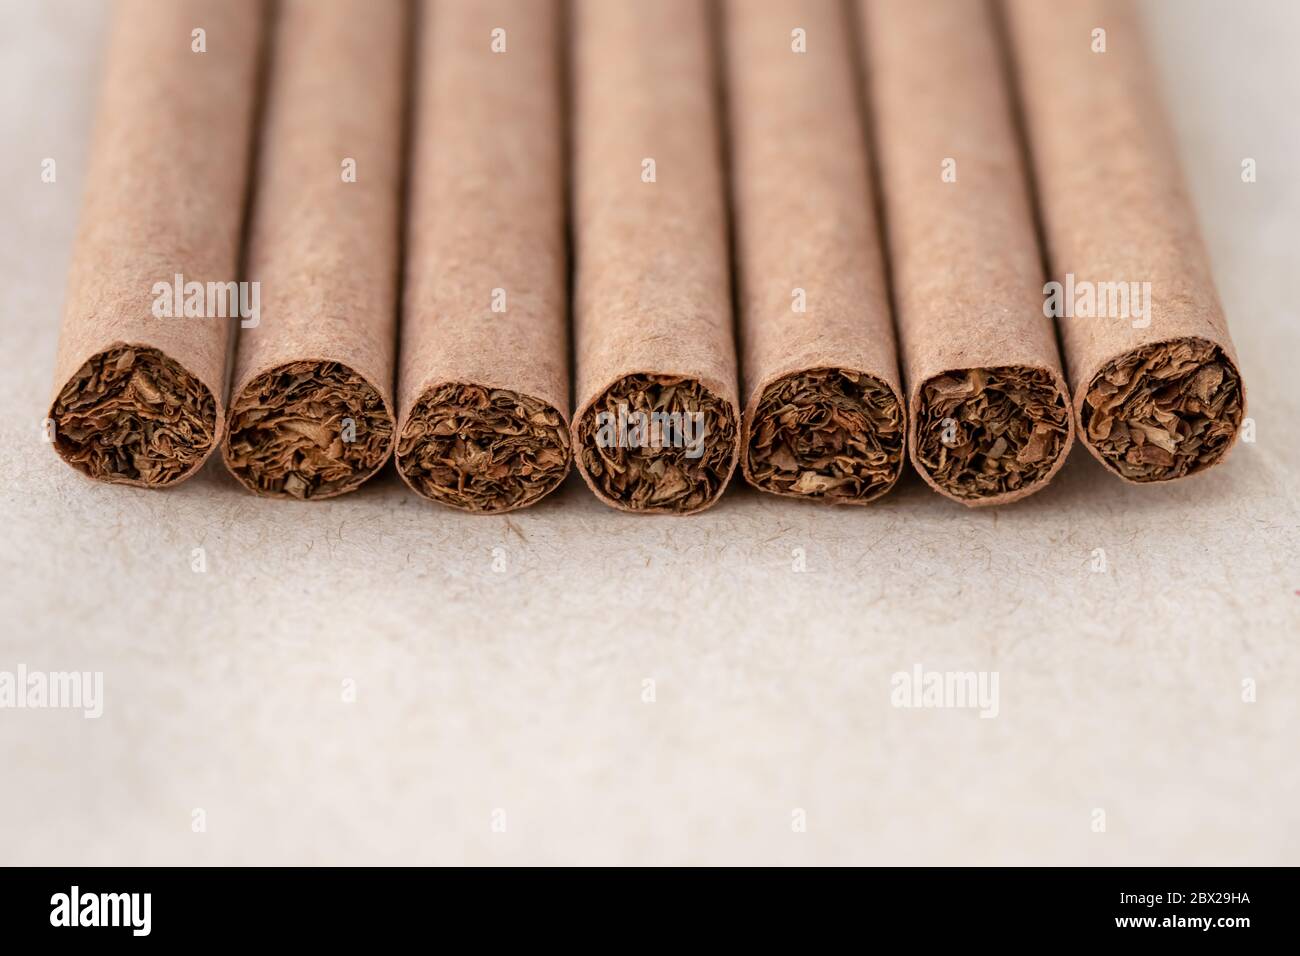 Primer plano de puros oscuros, cigarrillos marrones sobre fondo de papel neutro. Mal concepto de hábito Foto de stock